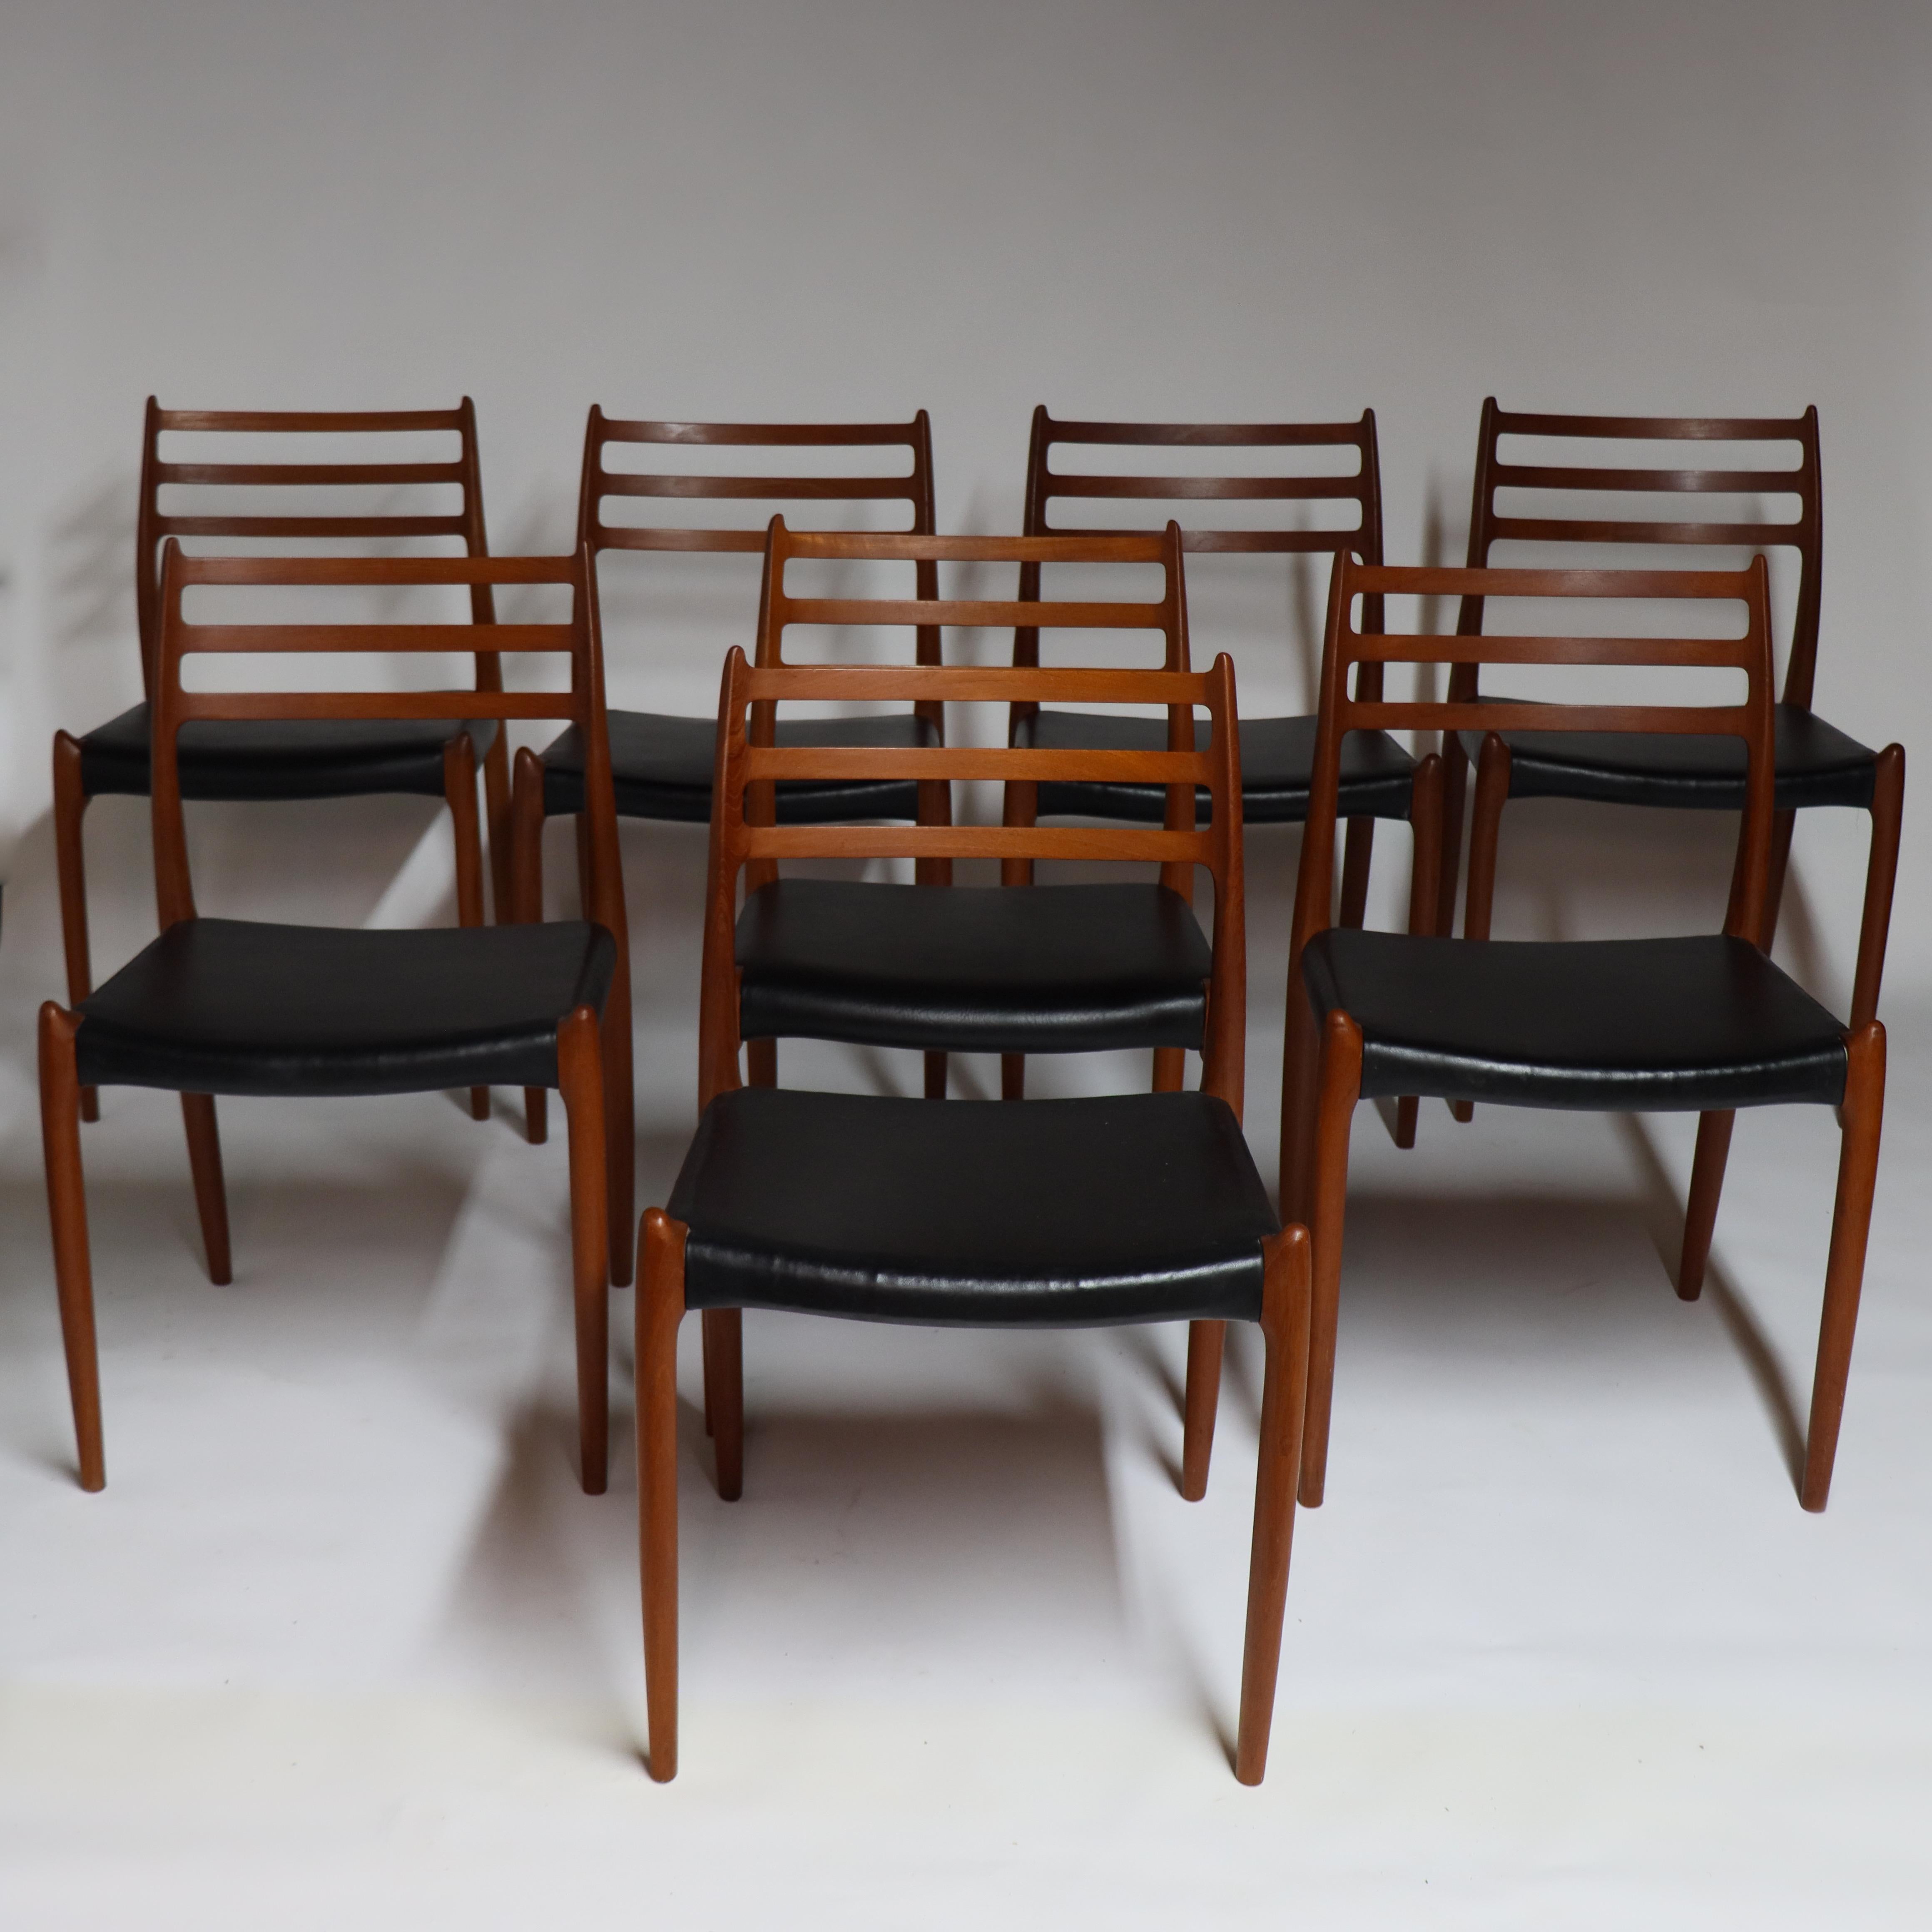 Magnifique ensemble de 8 chaises de salle à manger conçu par Neils O. Møller pour I.L.A. Møller, Danemark - 1962 (Modèle 78)

Ces beaux exemples sont exécutés en teck ancien et ont une couleur magnifique. Le modèle 78 est la chaise la plus